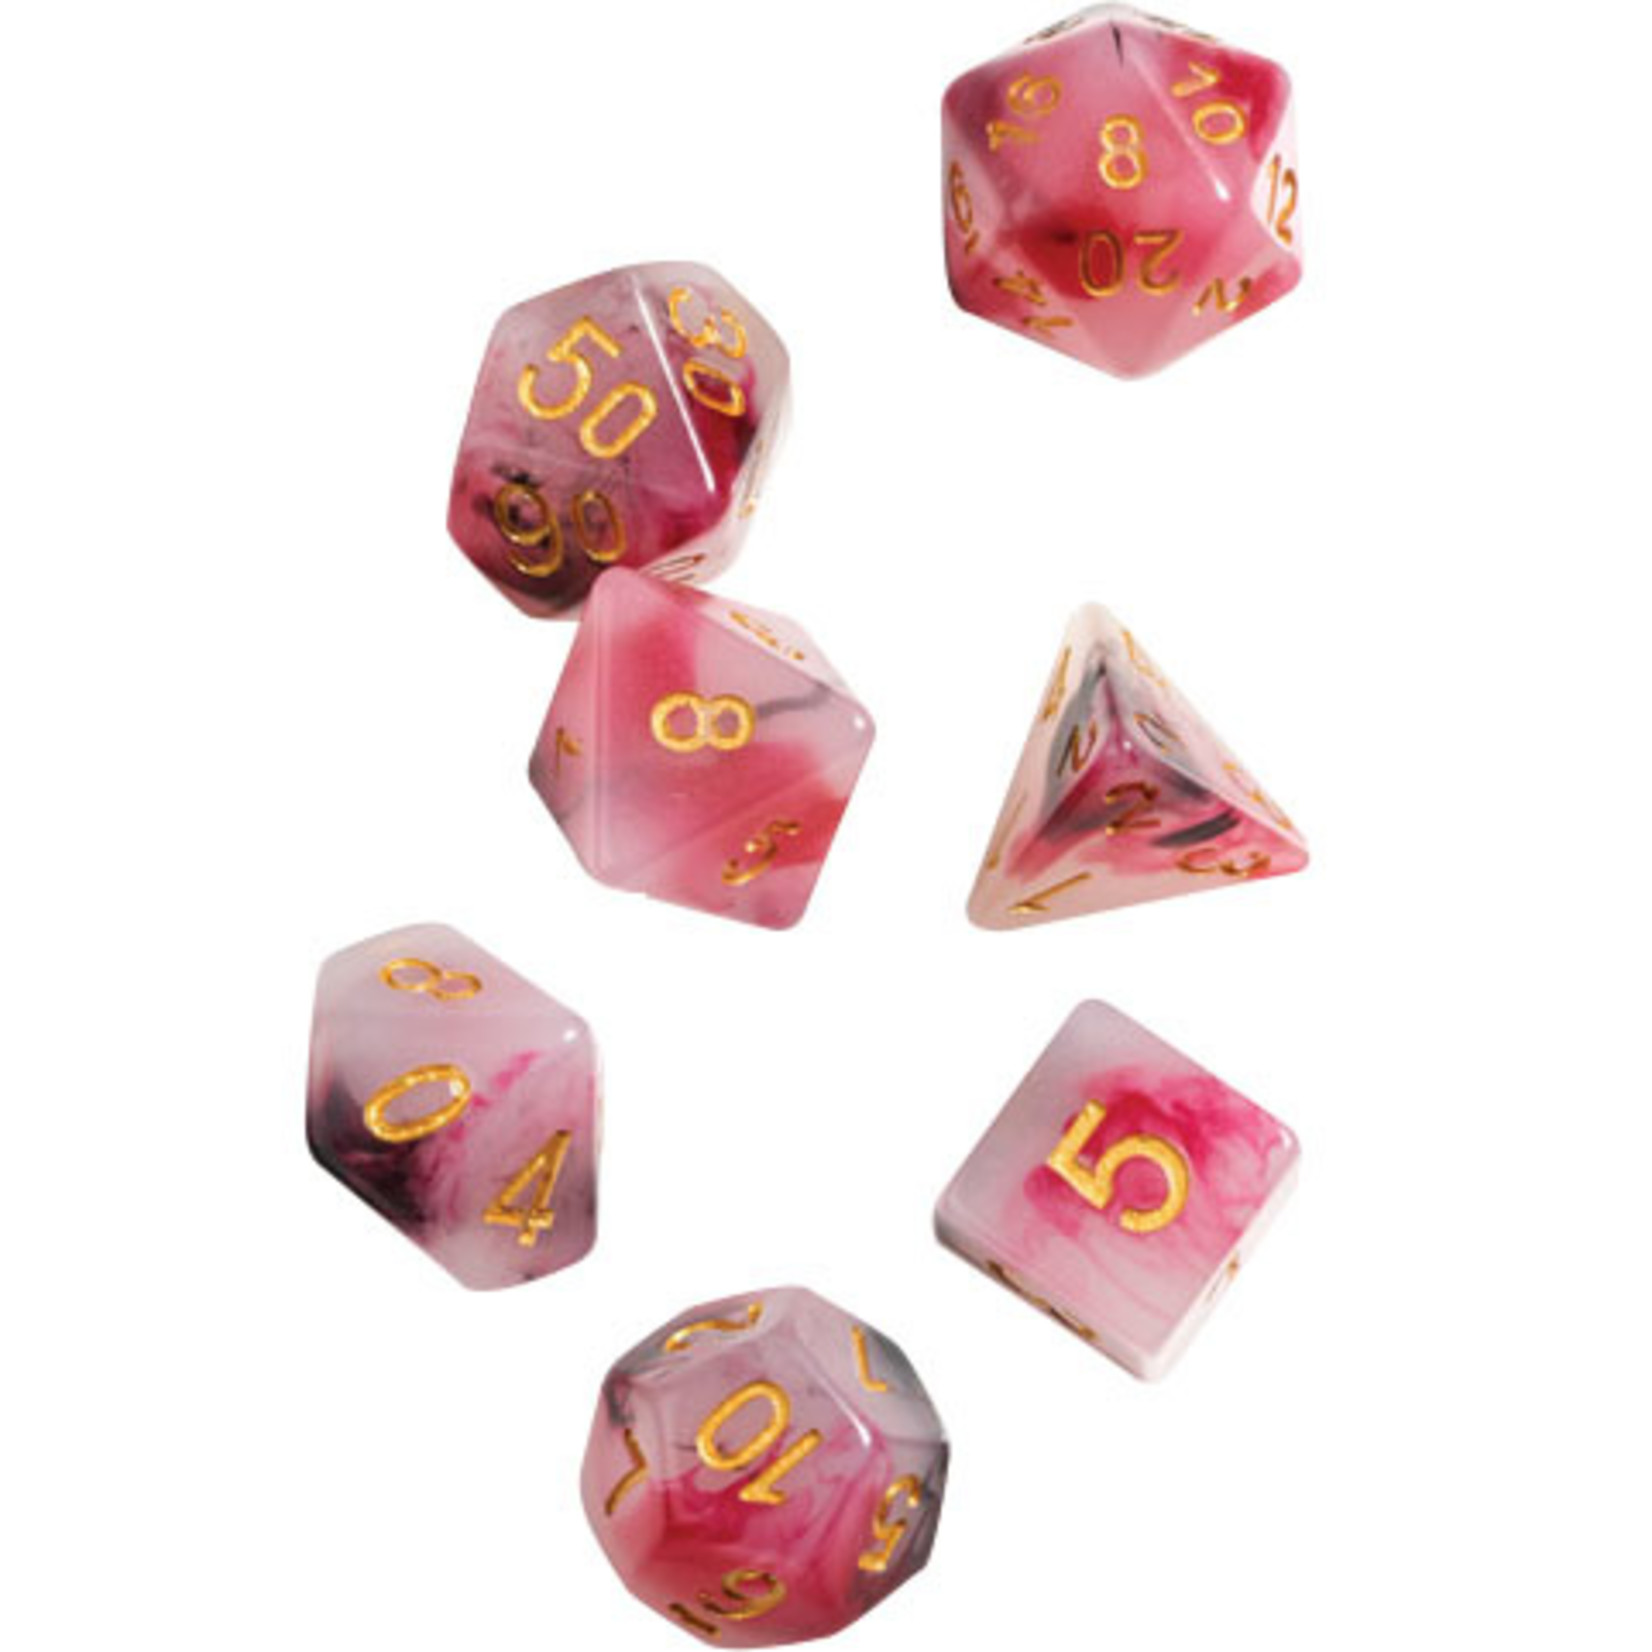 RPG Dice Set (7): Pink, Black, Red Marble